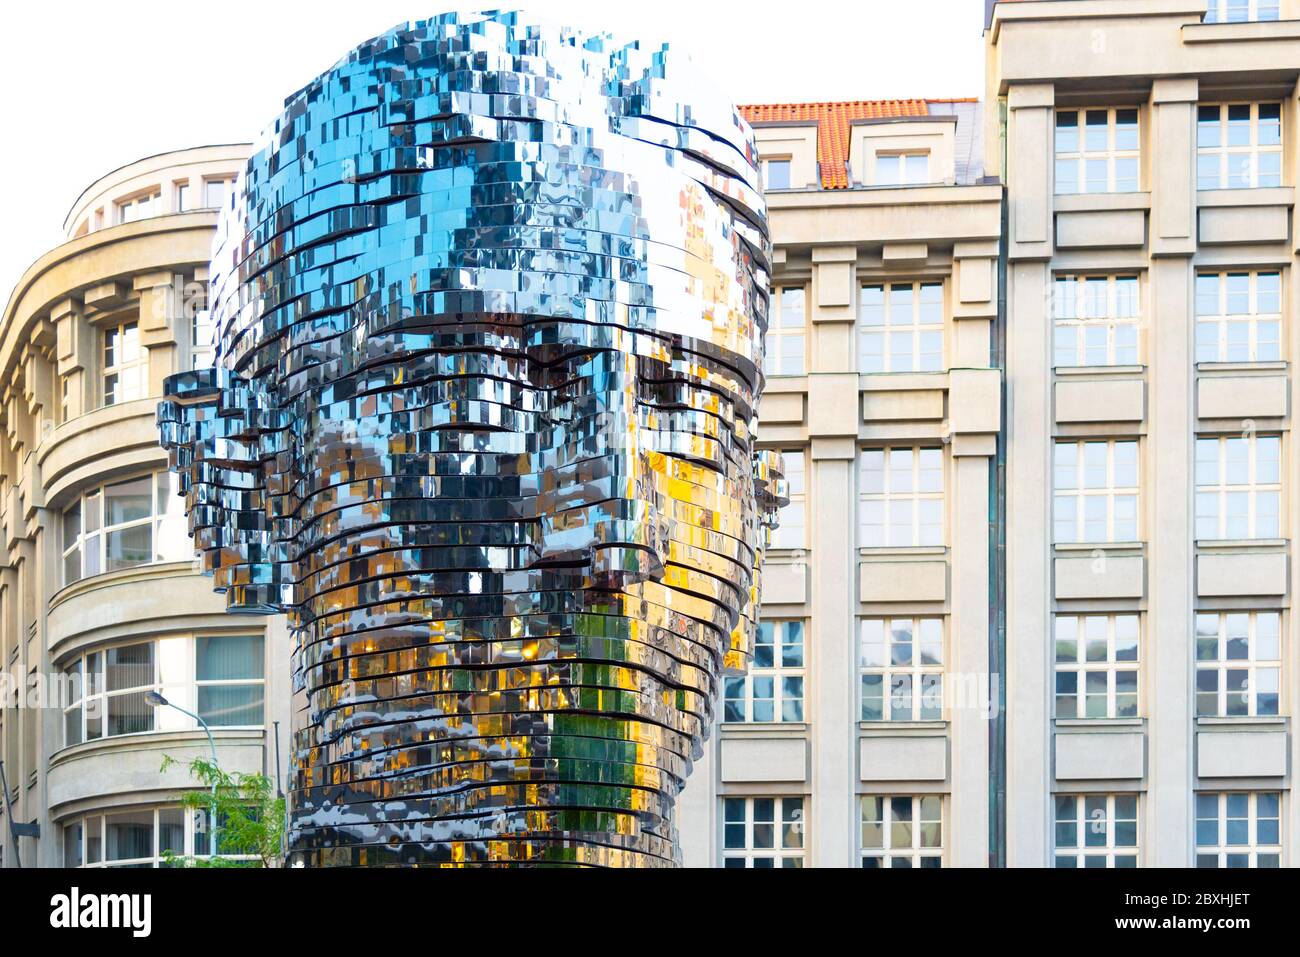 PRAGUE, CZECH REPUBLIC - AUGUST 17, 2018: Statue of Franz Kafka. Glossy metal mechanical sculpture of famous Czech writer. Bust by artist David Cerny. Prague, Czech Republic. Stock Photo